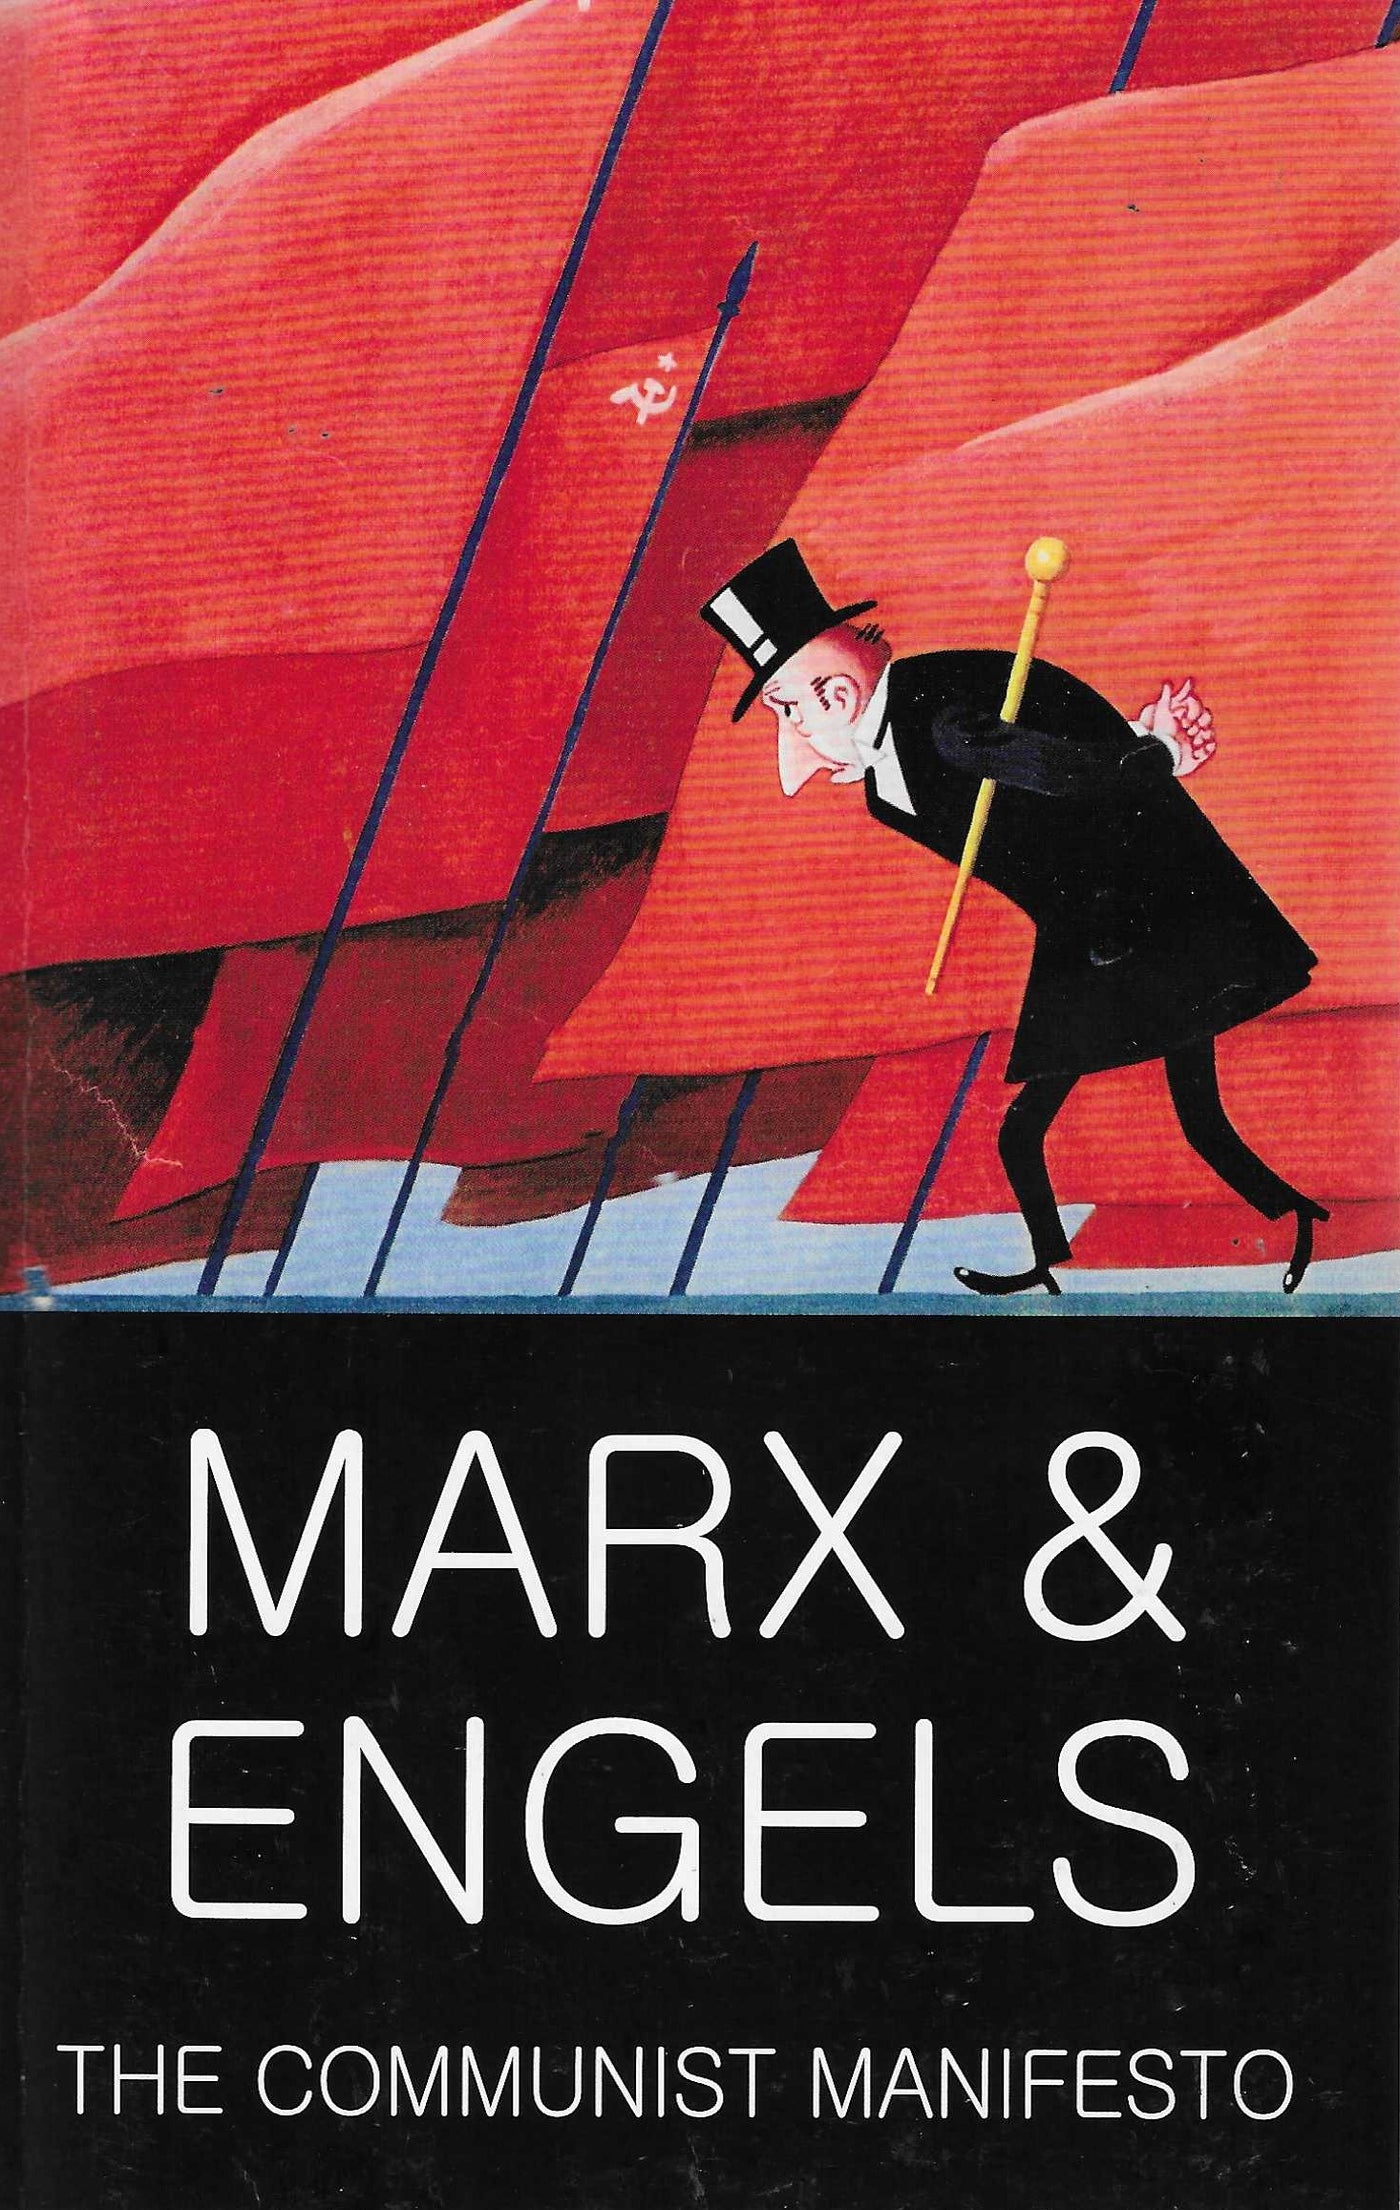 Communist Manifesto by Karl Marx [NEW]